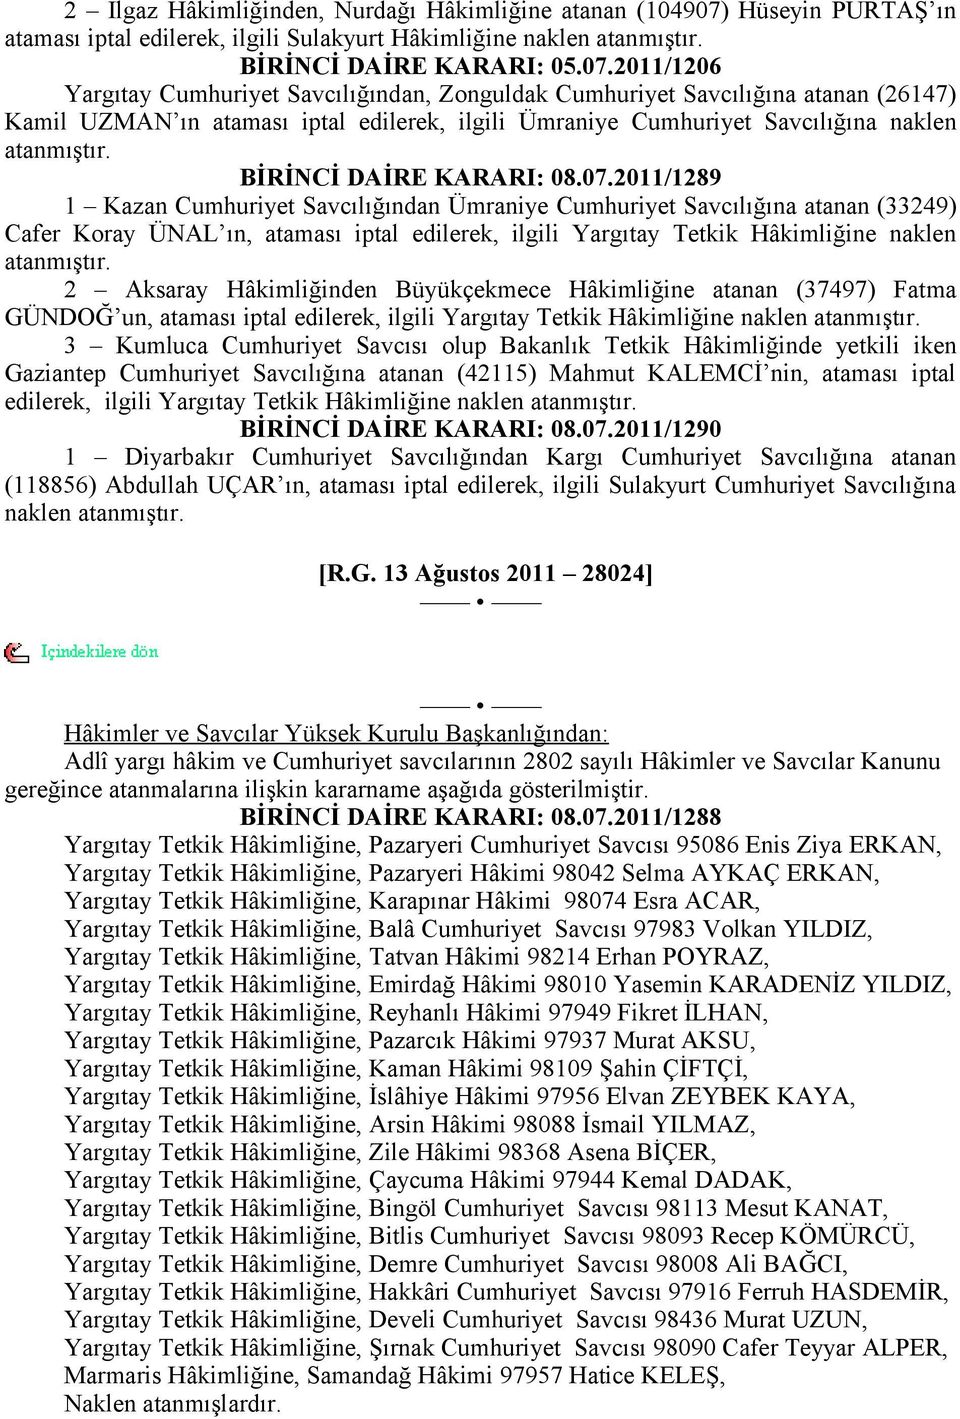 2011/1206 Yargıtay Cumhuriyet Savcılığından, Zonguldak Cumhuriyet Savcılığına atanan (26147) Kamil UZMAN ın ataması iptal edilerek, ilgili Ümraniye Cumhuriyet Savcılığına naklen atanmıştır.